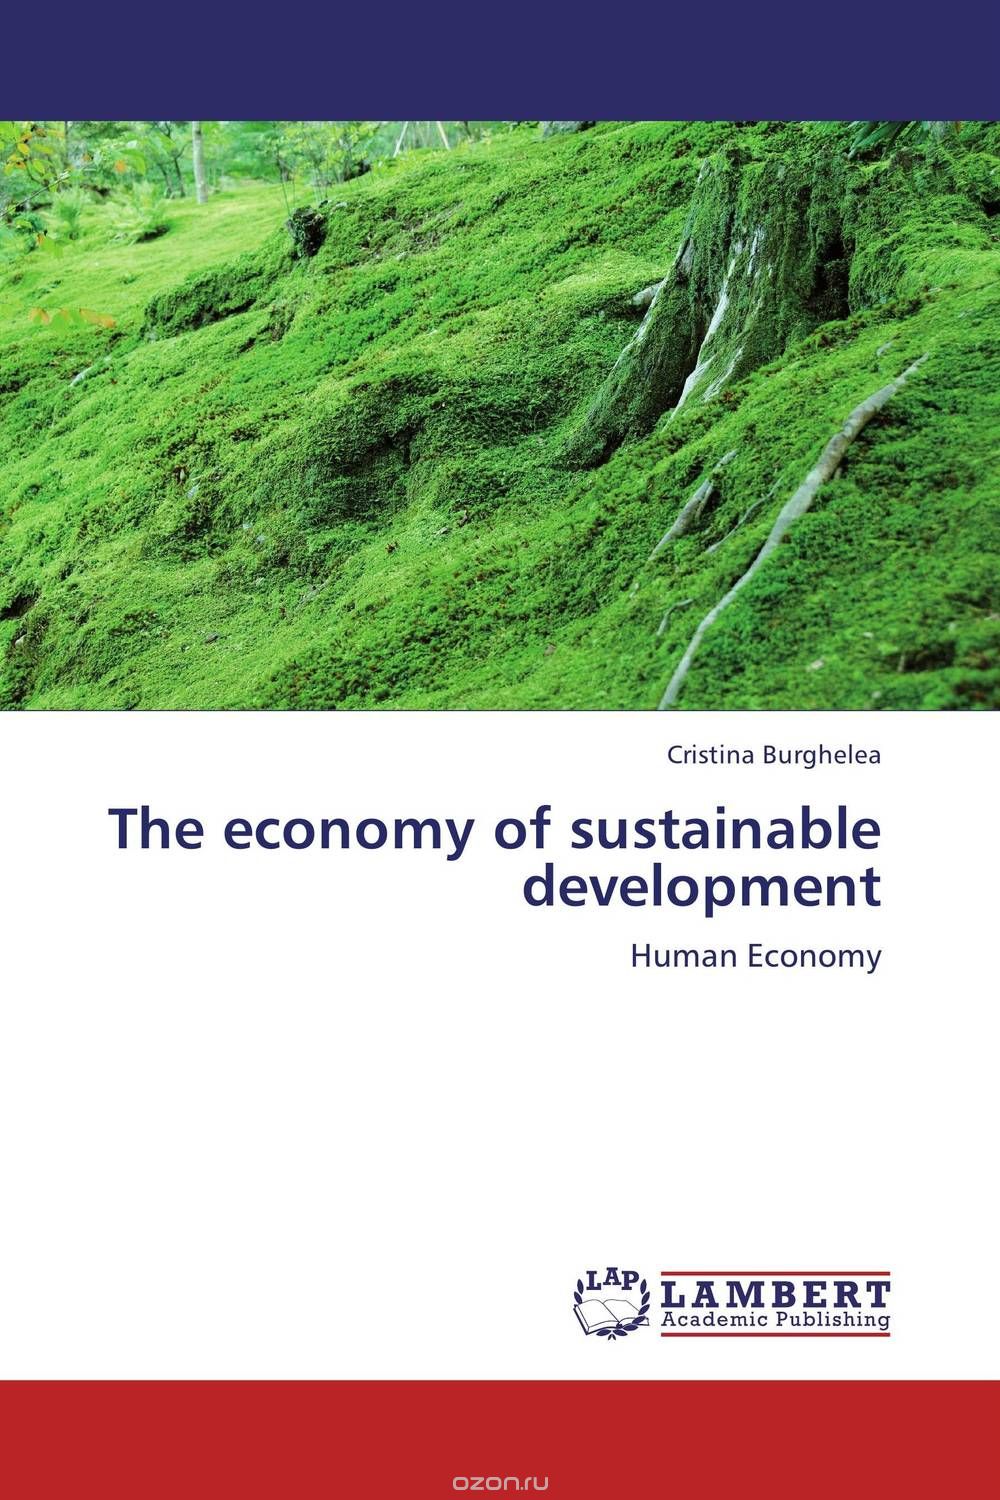 Скачать книгу "The economy of sustainable development"